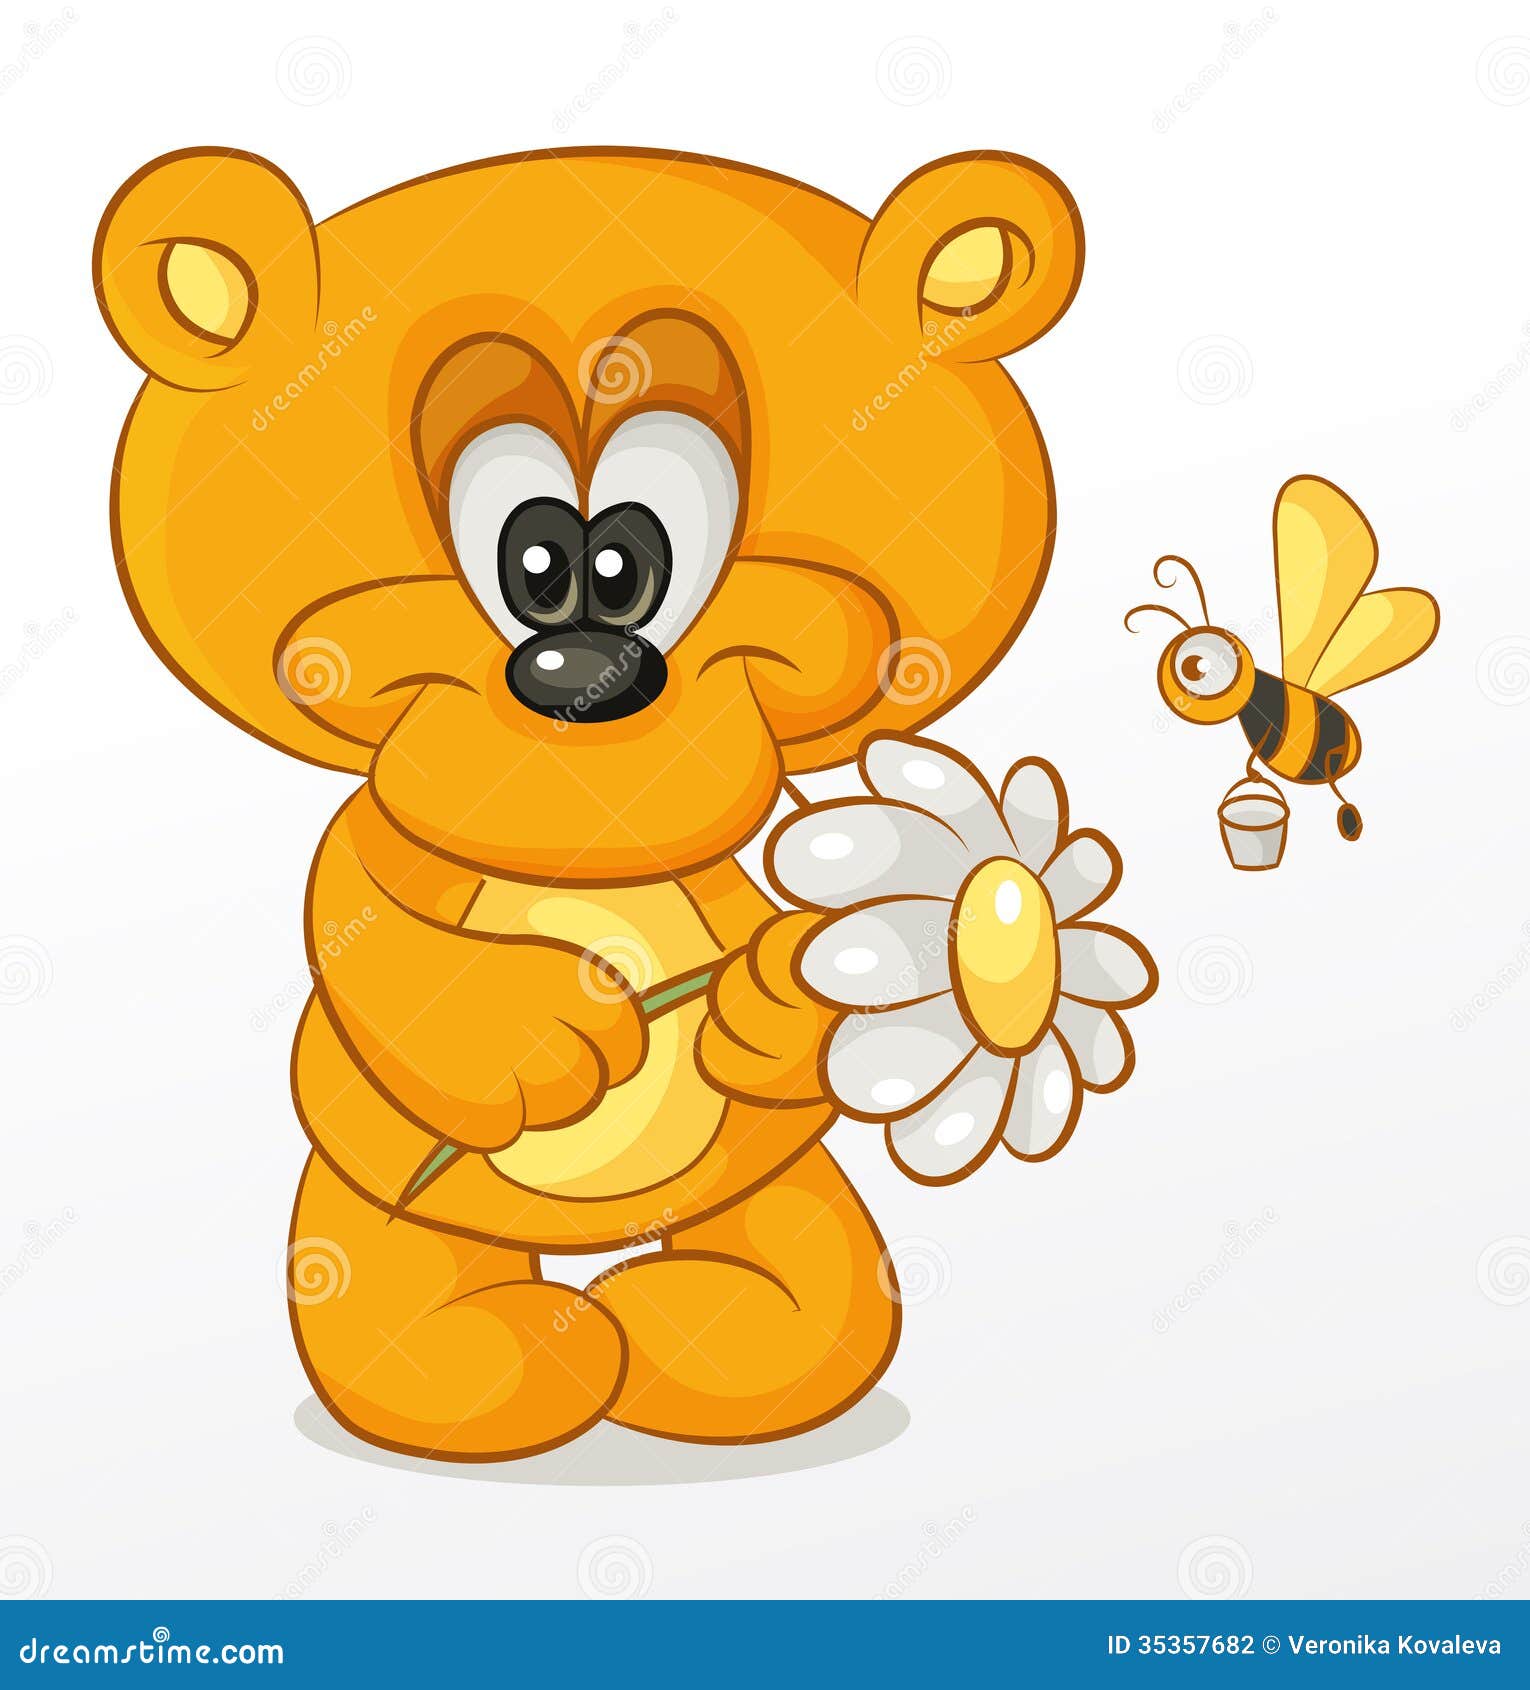 teddy bear with flowers clipart - photo #6